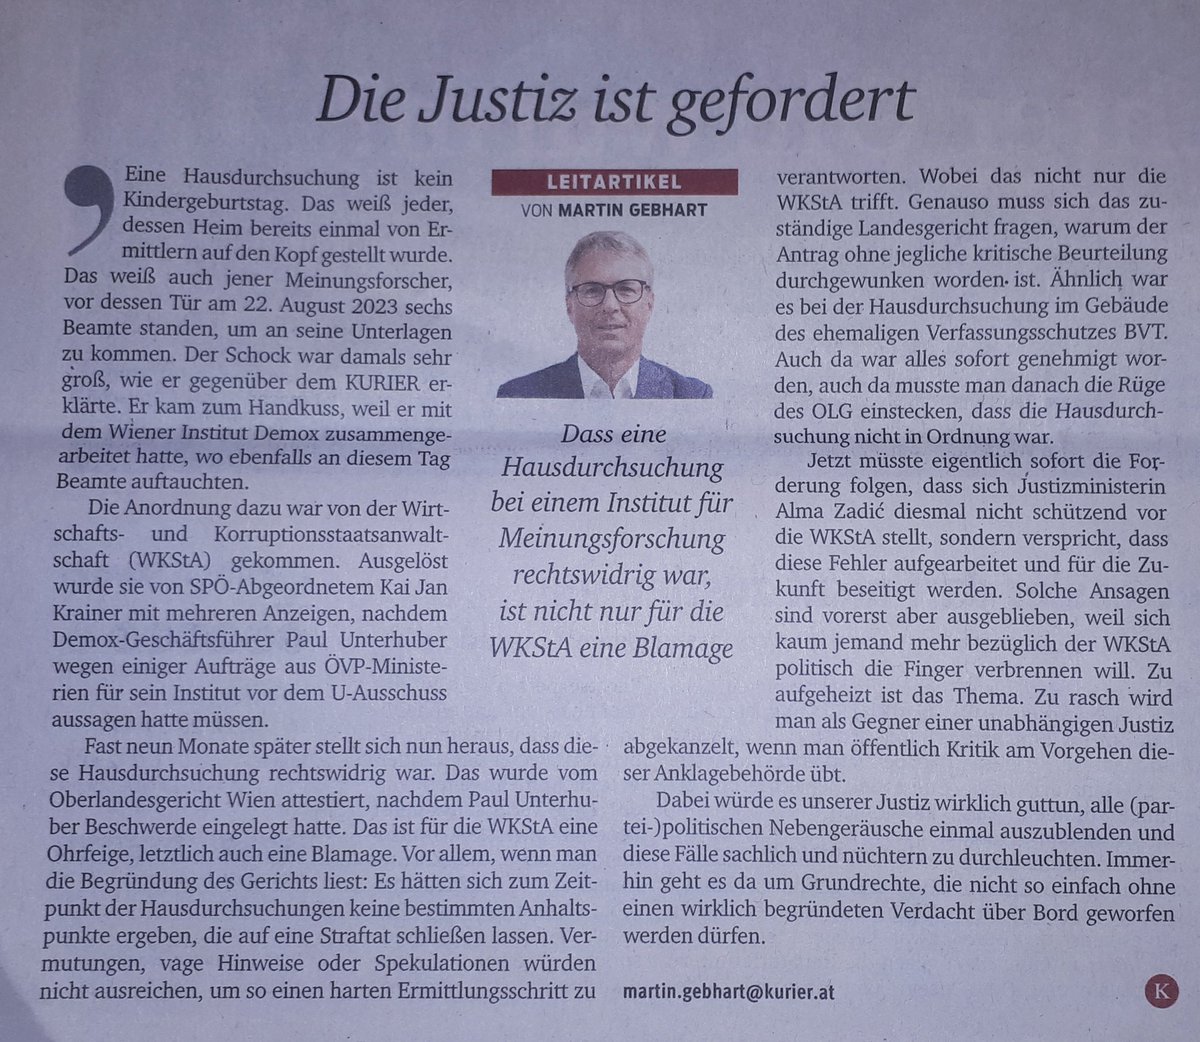 Jetzt hat der Martin #Gebhart bei seinem WKStA- und Justiz- Bashing im @Kurierat ganz vergessen zu erwähnen, dass besagter Paul #Unterhuber ein #ÖVP Mann ist.
kontrast.at/oevp-umfragen/